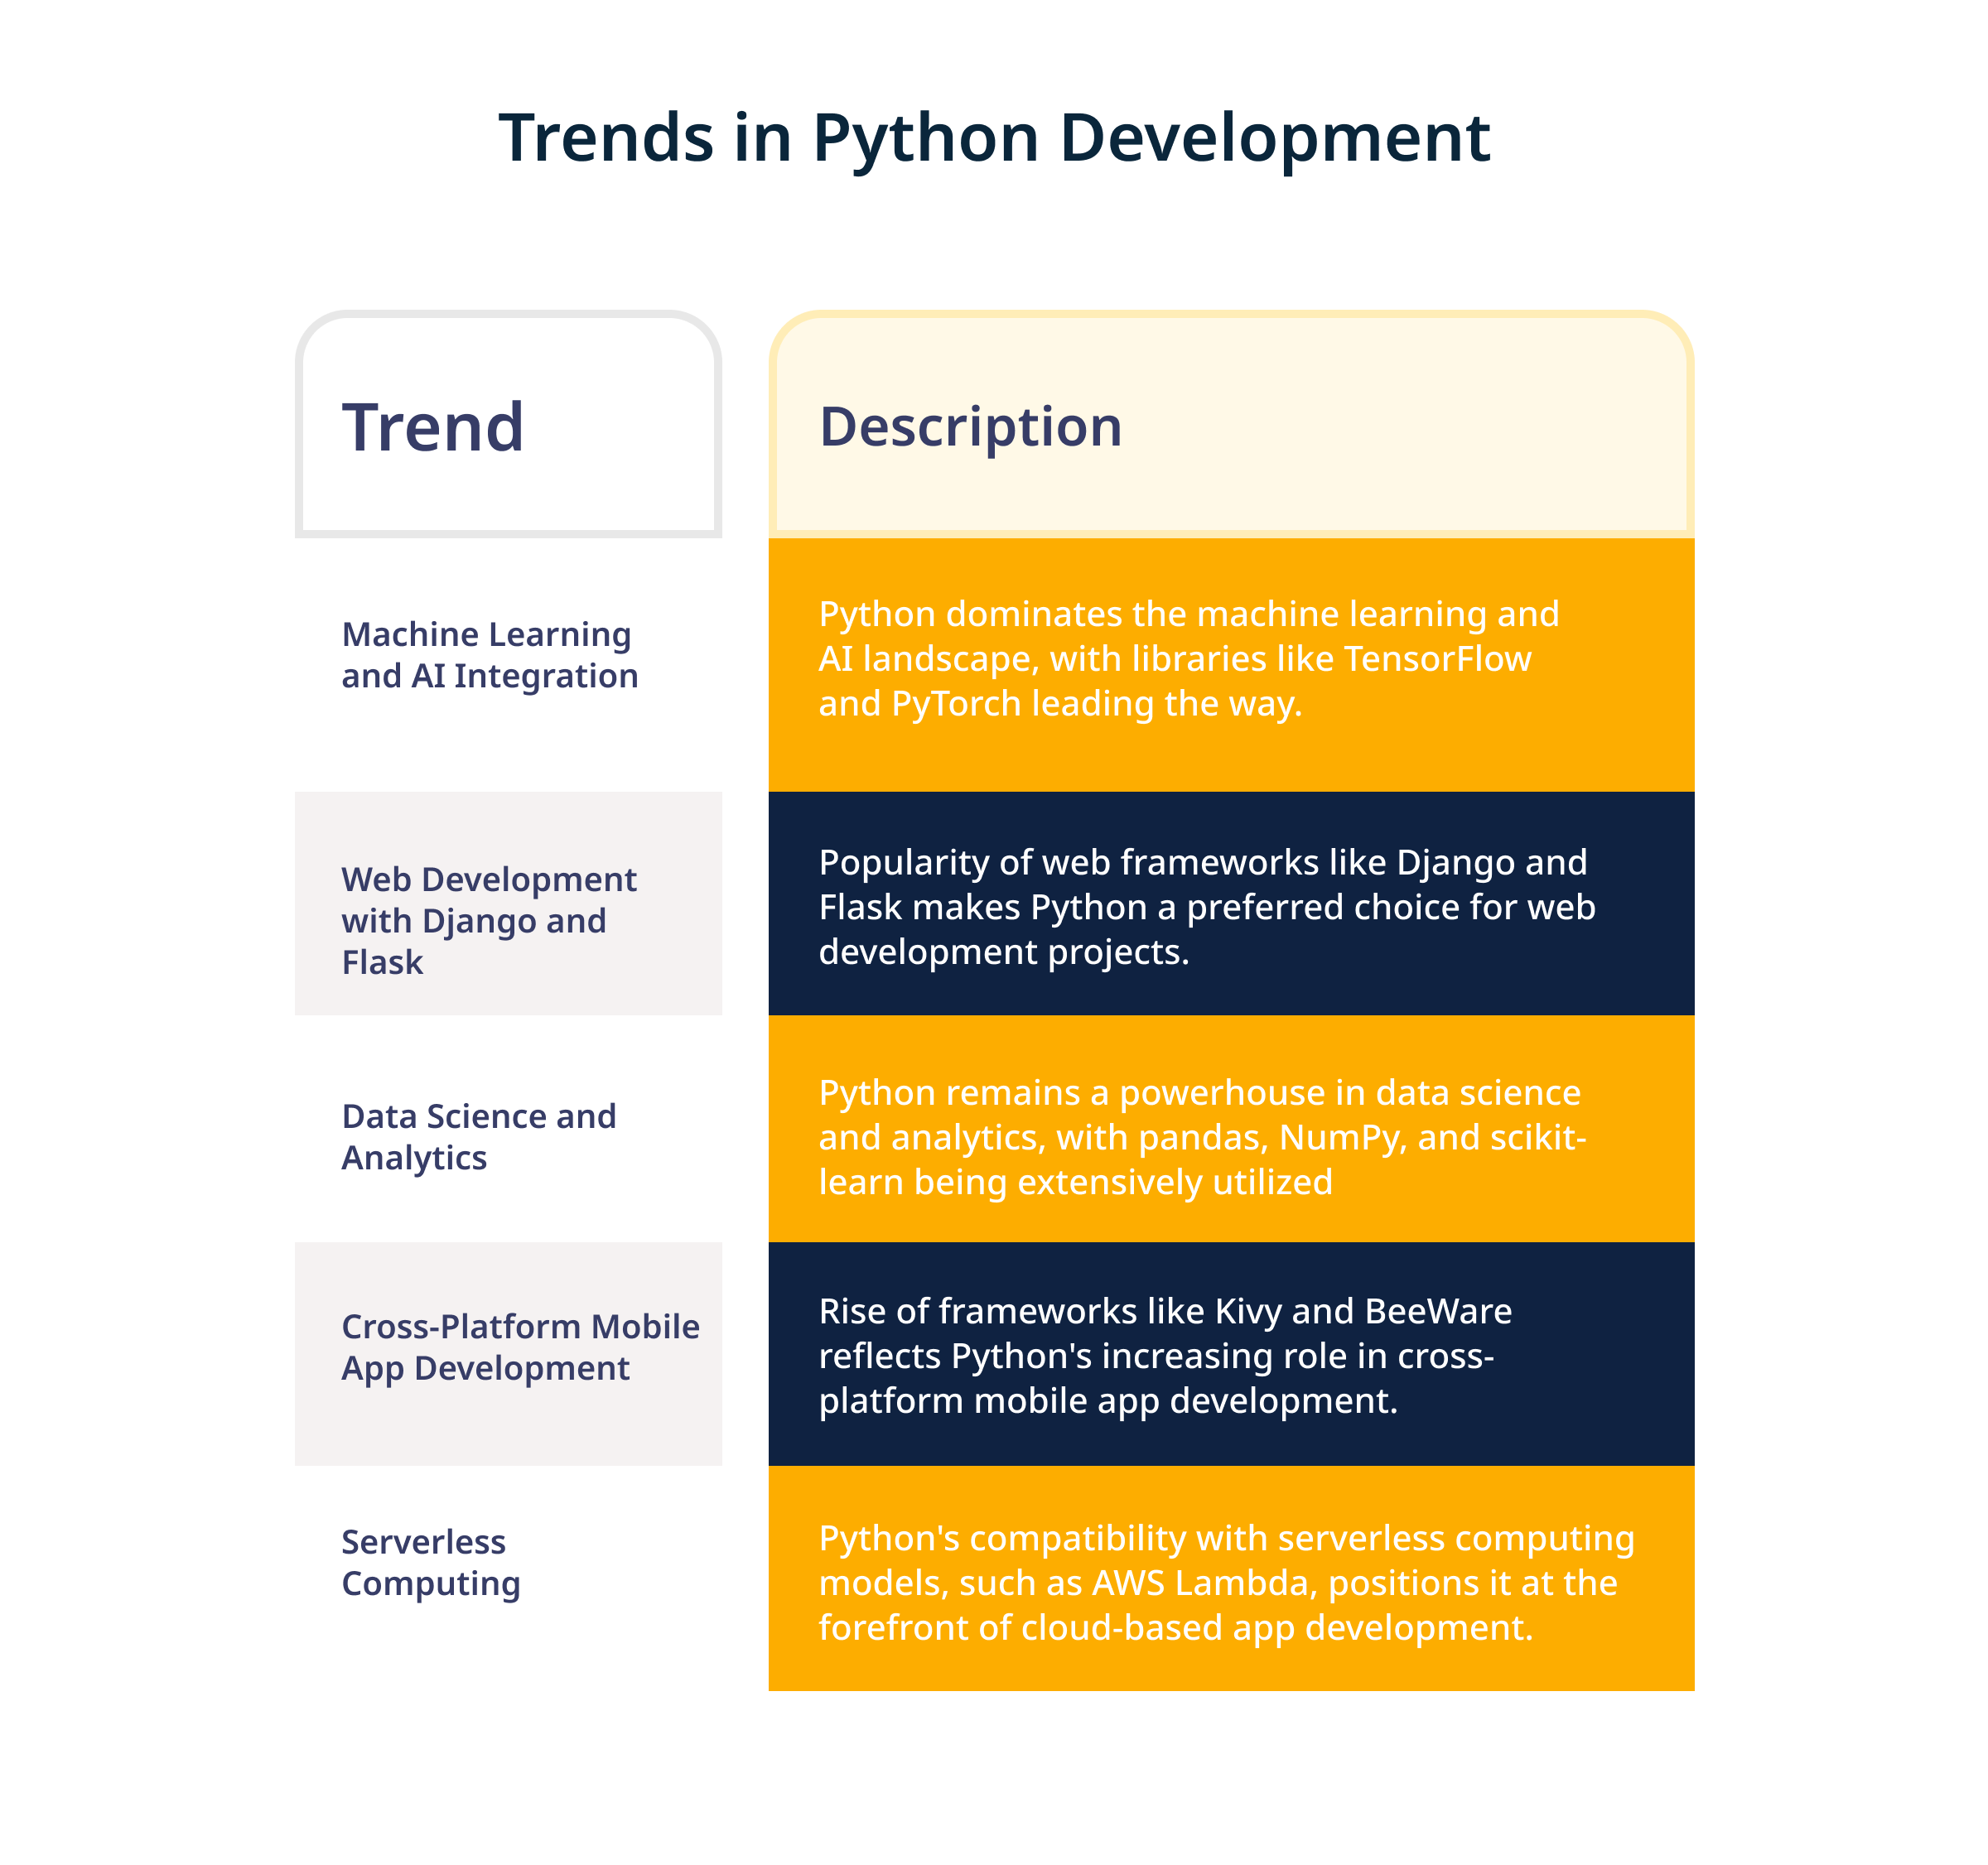 Trends in Python development